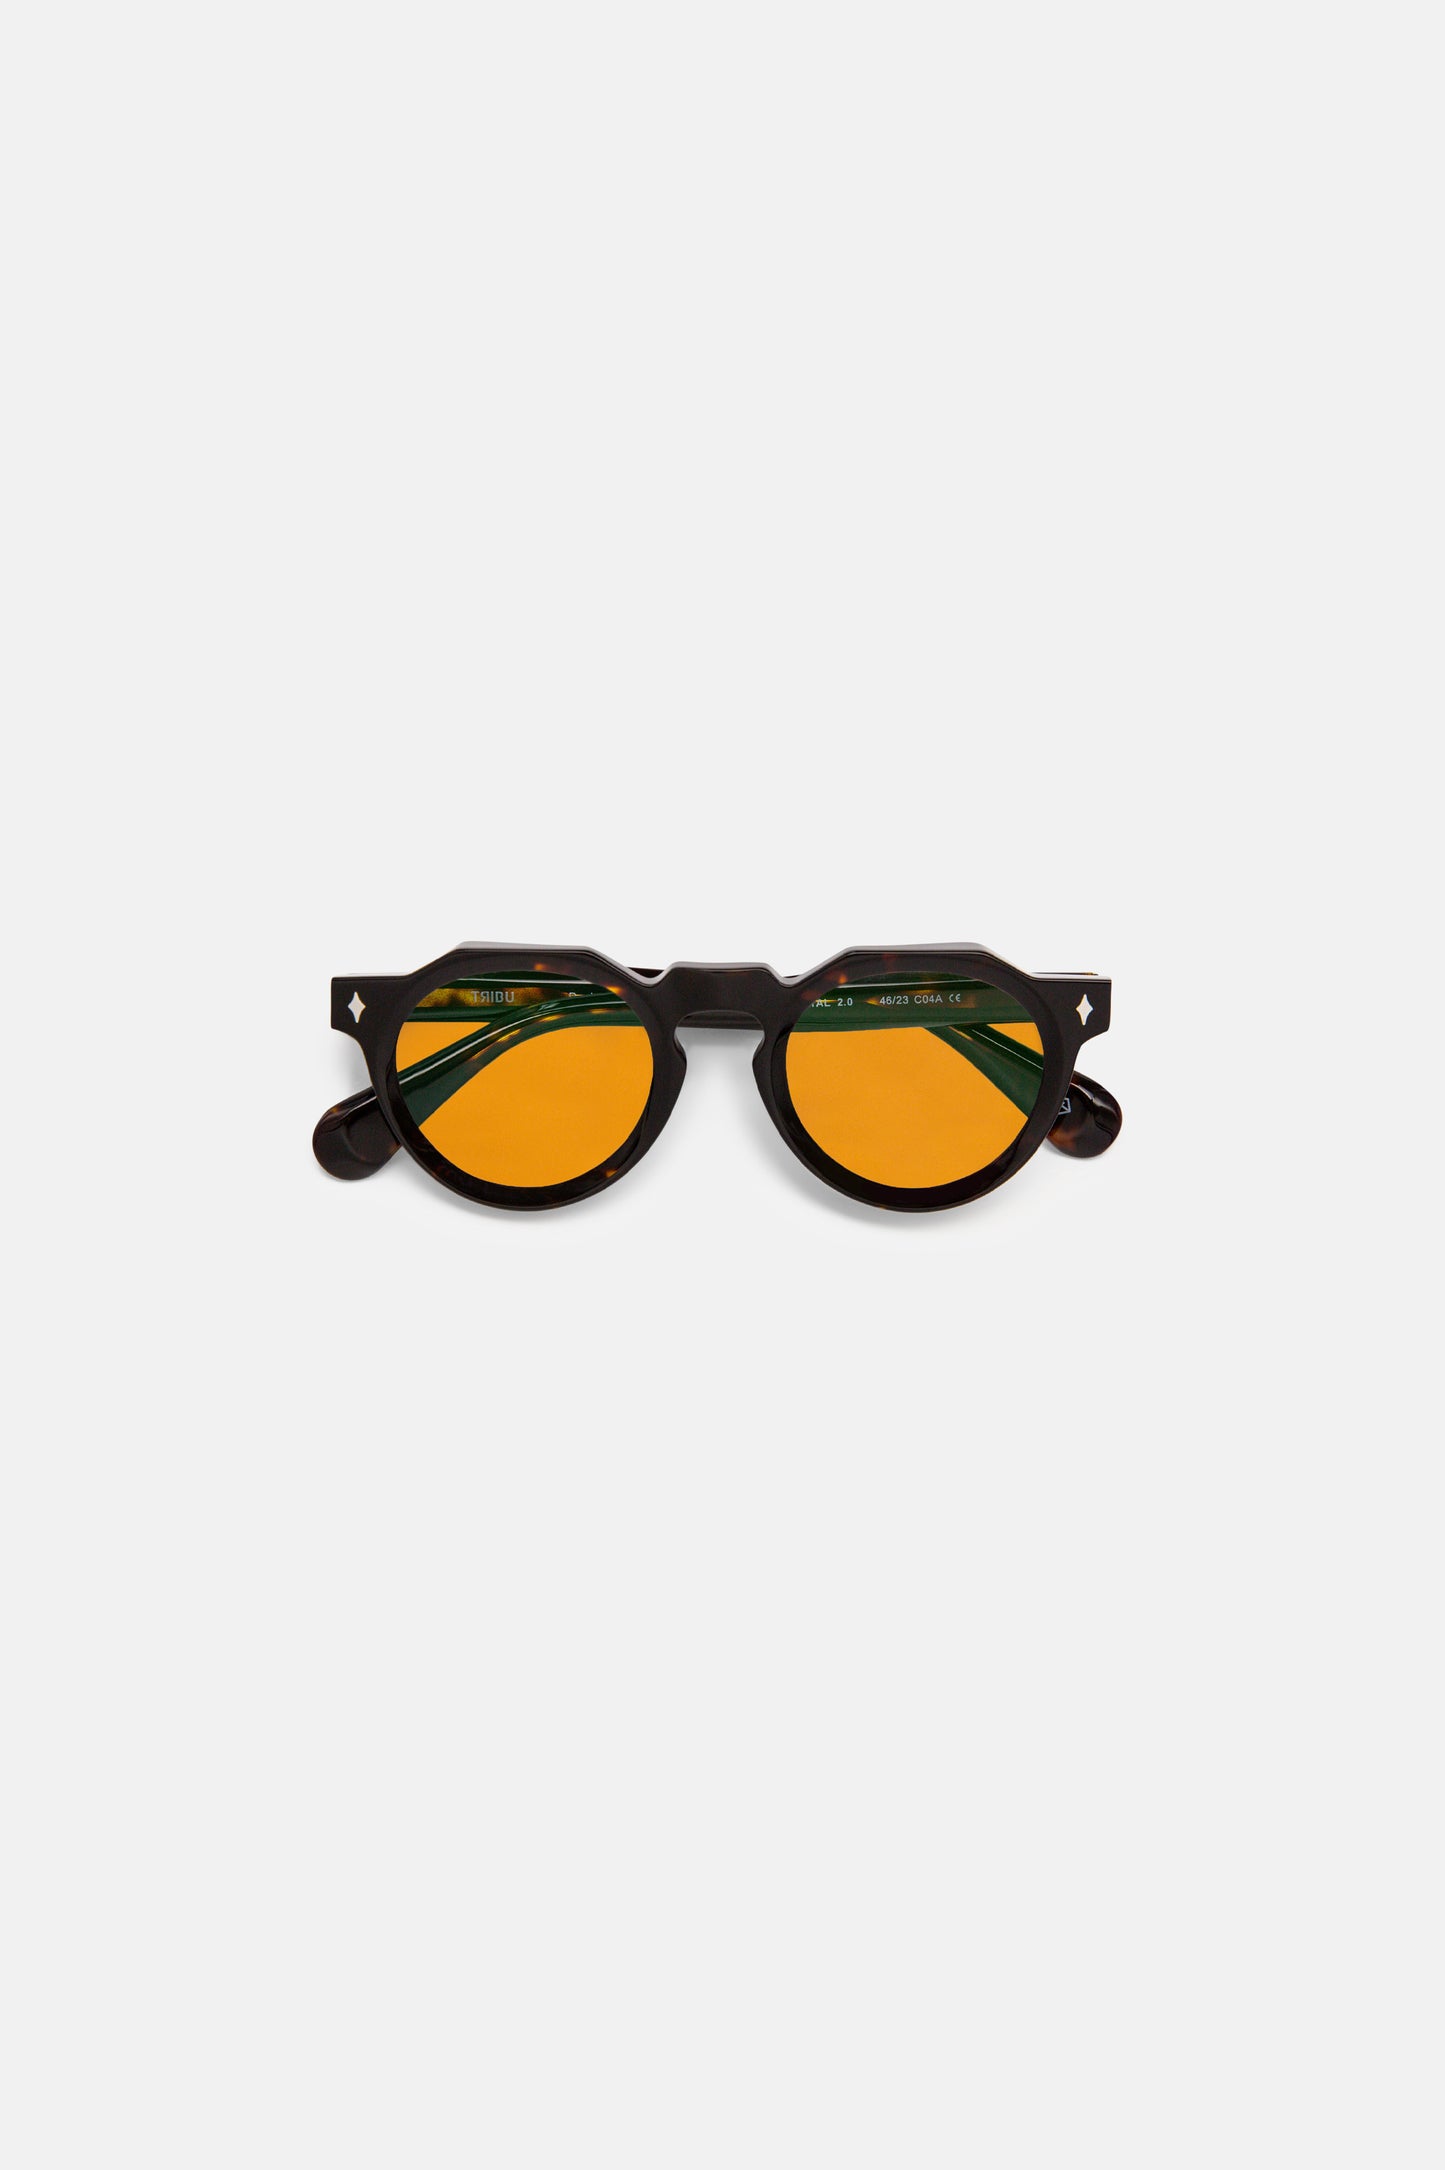 Brutal 2.0 Sunglasses Tortoiseshell w/ Orange Lens